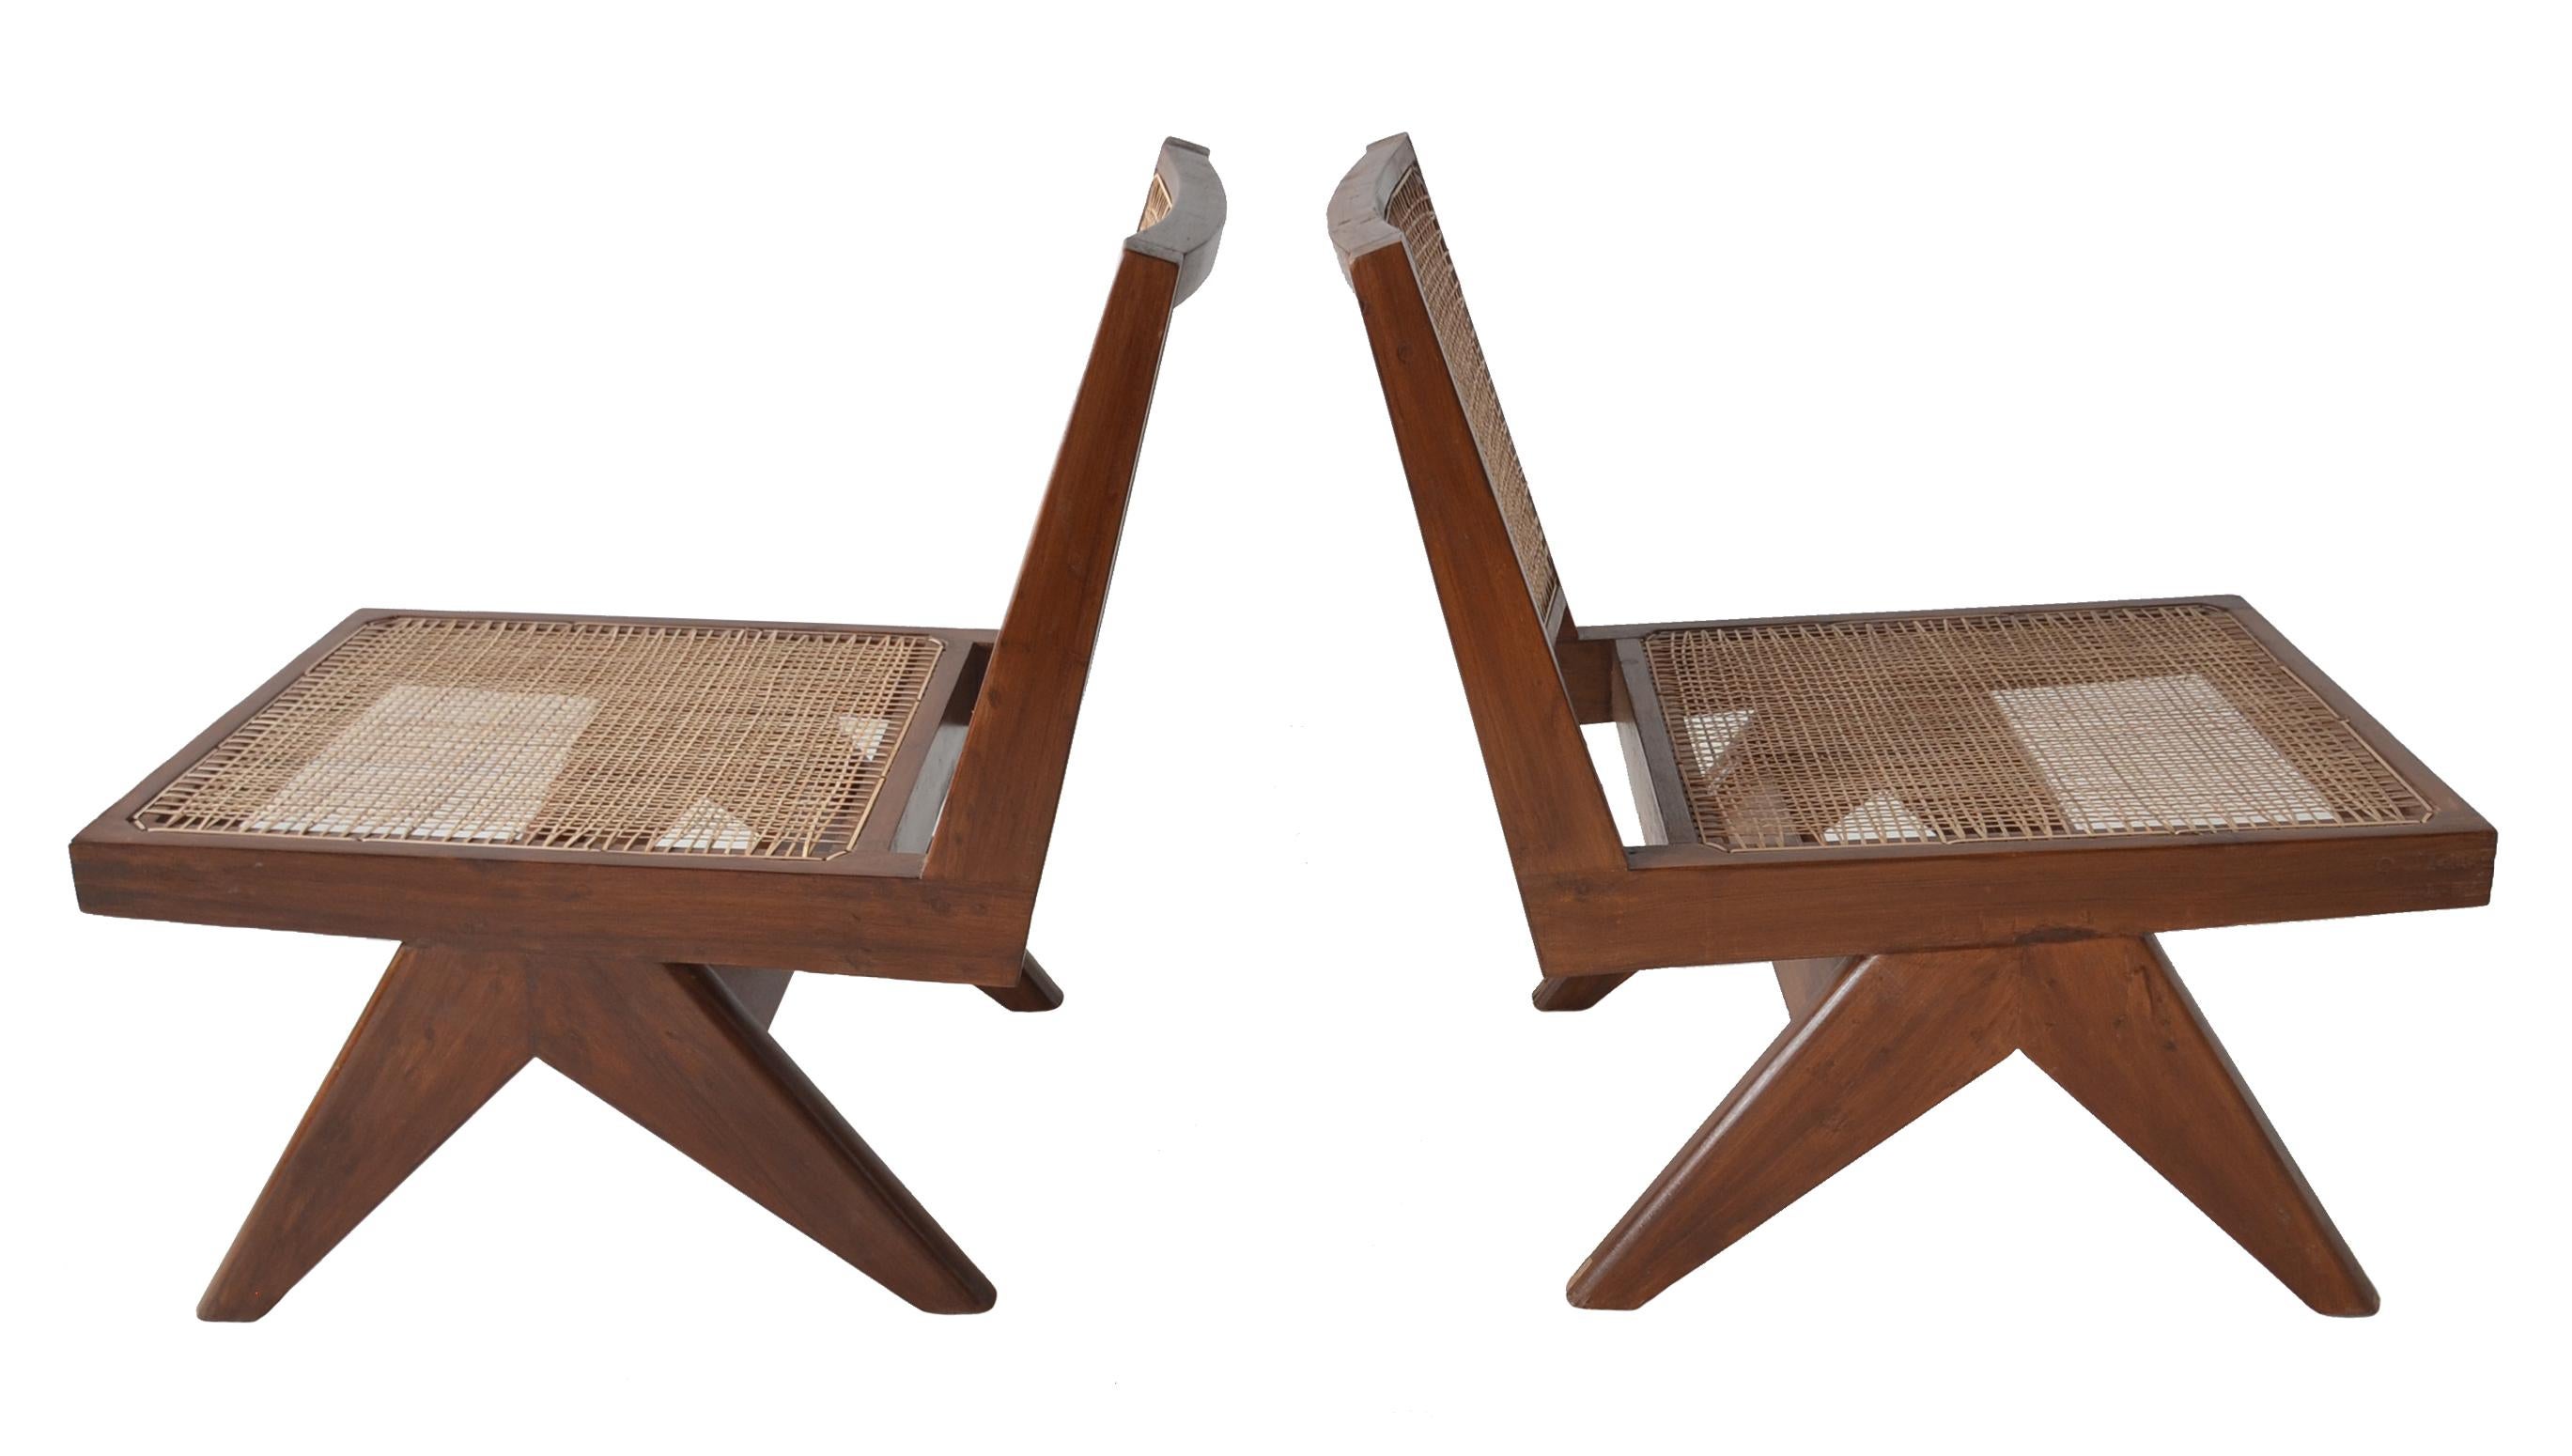 Ein hervorragendes Paar seltener armloser, niedriger Loungesessel mit gepolsterten Sitzen von Pierre Jeanneret für das Projekt Chandigarh.
Modell PJ-SI-35-A um 1960

Massive Teakholzkonstruktion mit gepolsterten Sitzen und Rückenlehnen. 

Diese